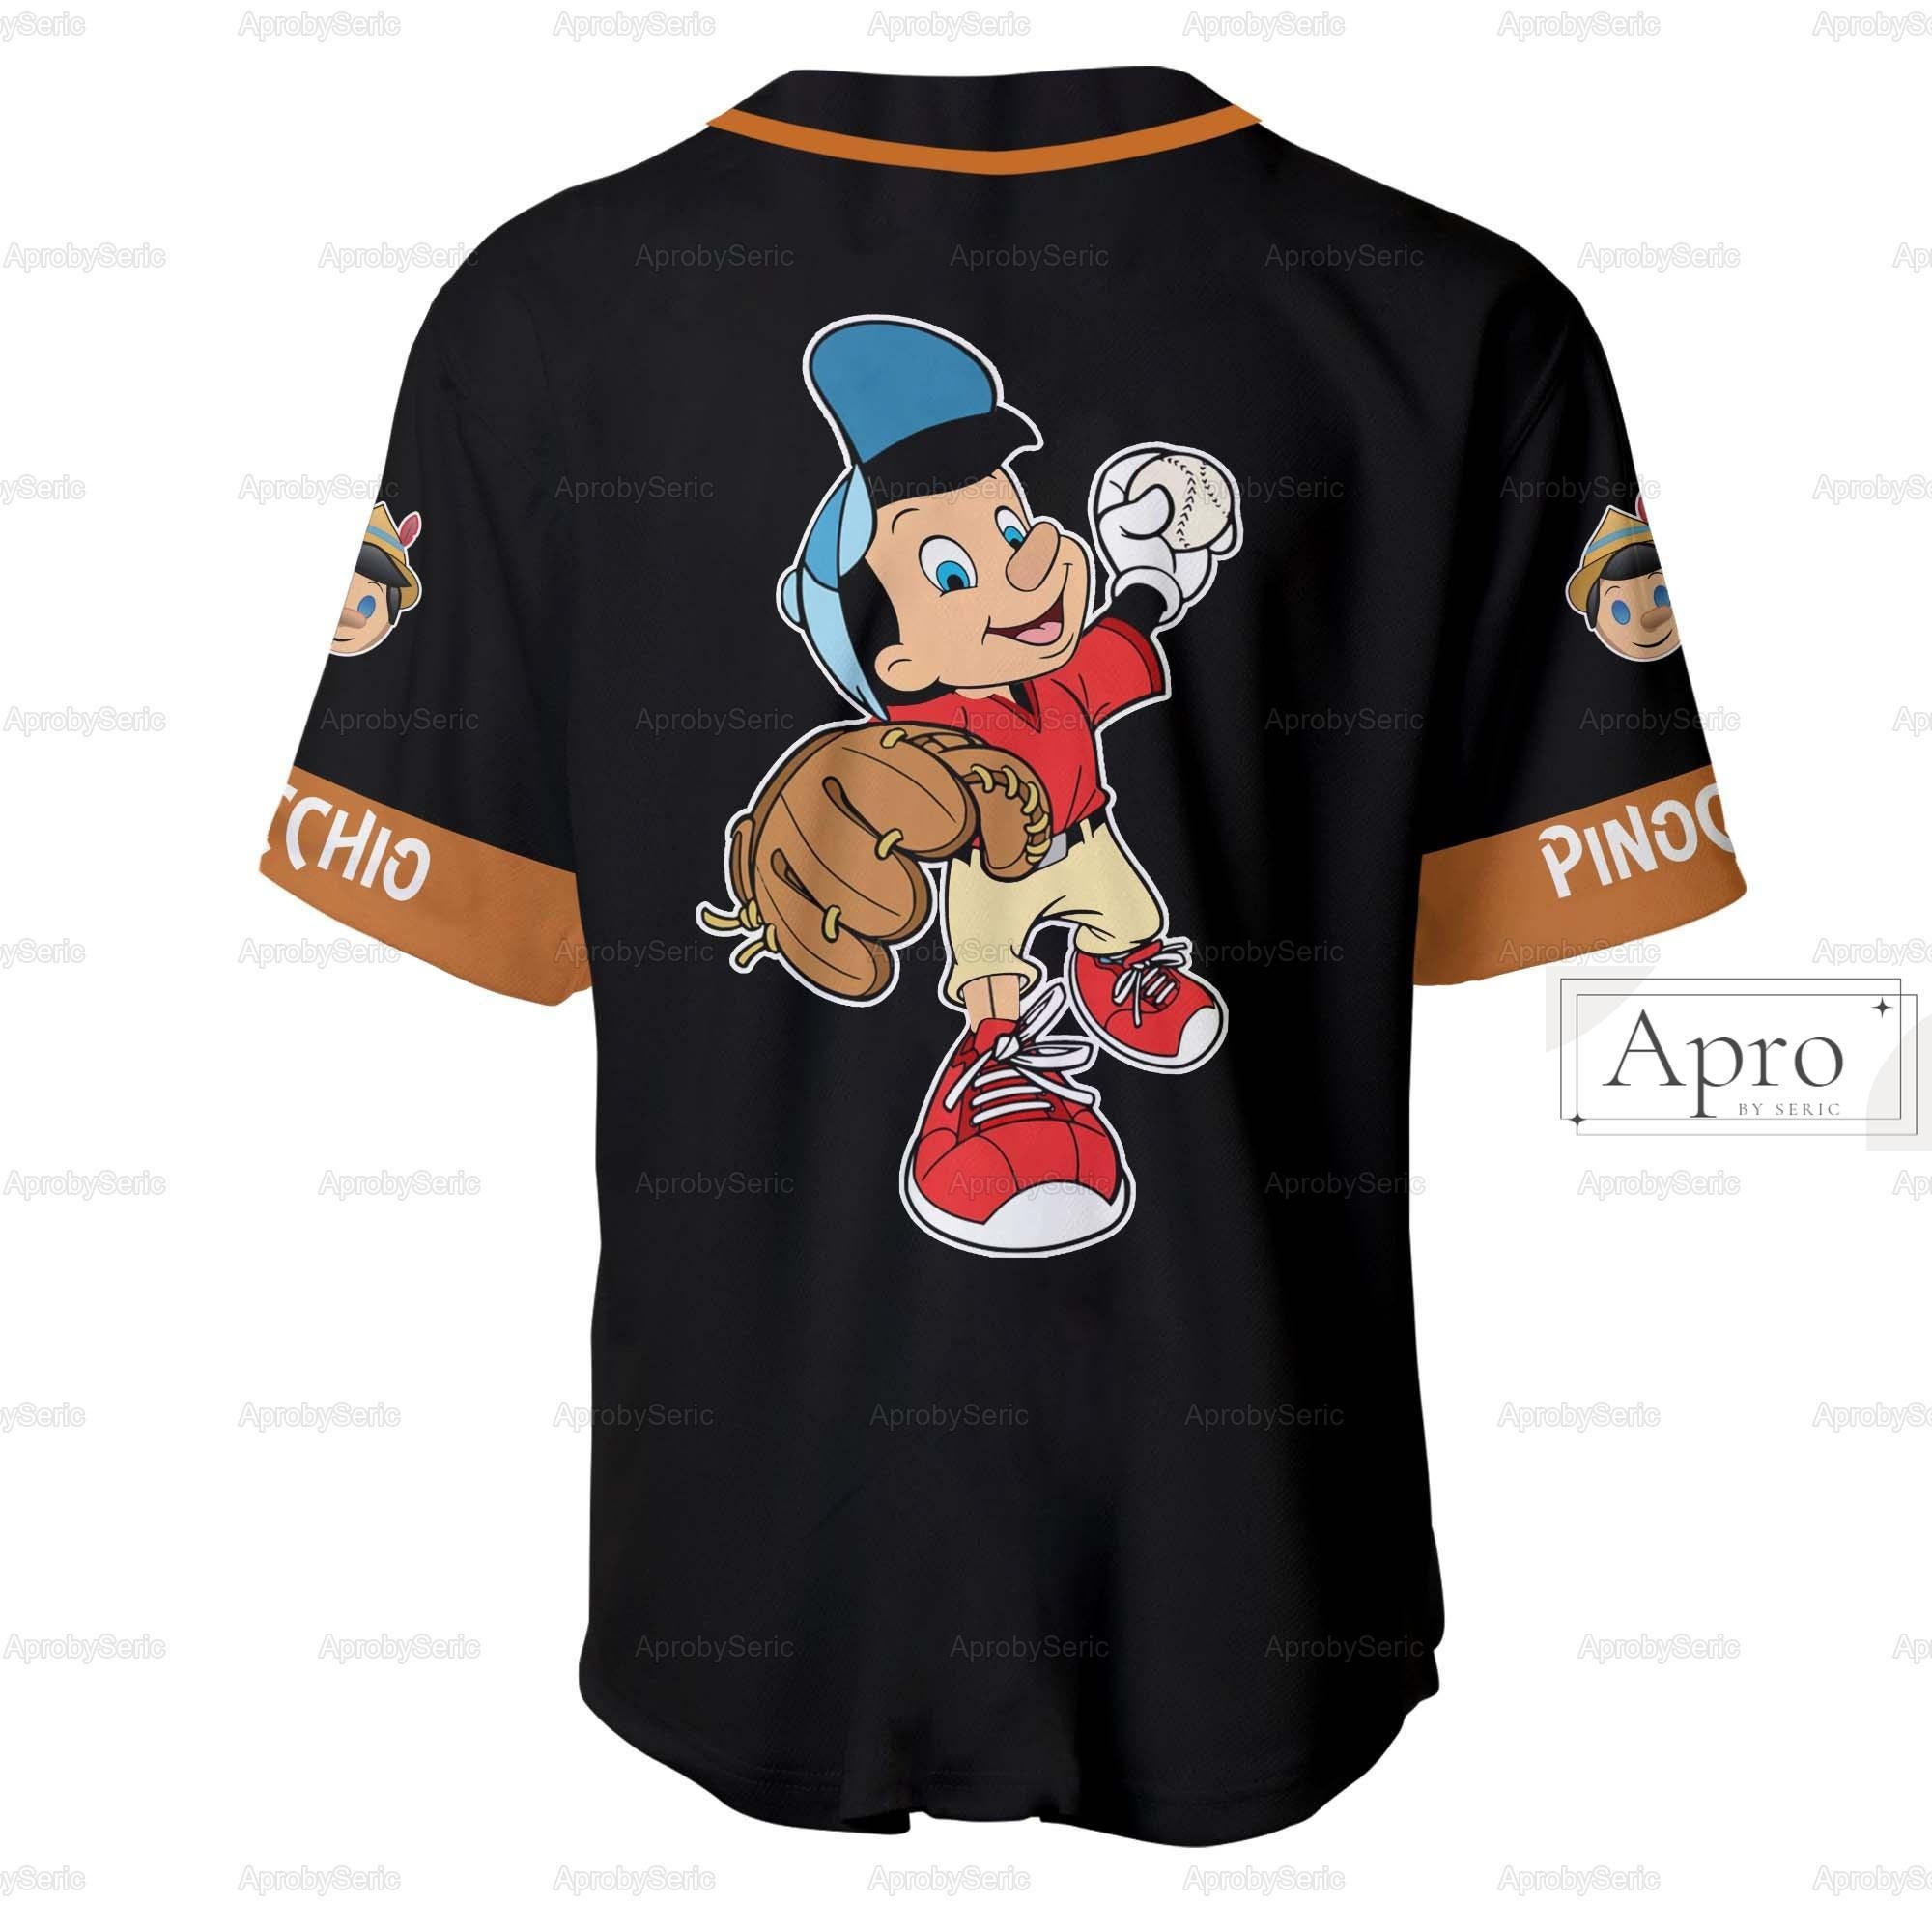 Personalized Pinocchio Jersey Pinocchio Baseball Jersey